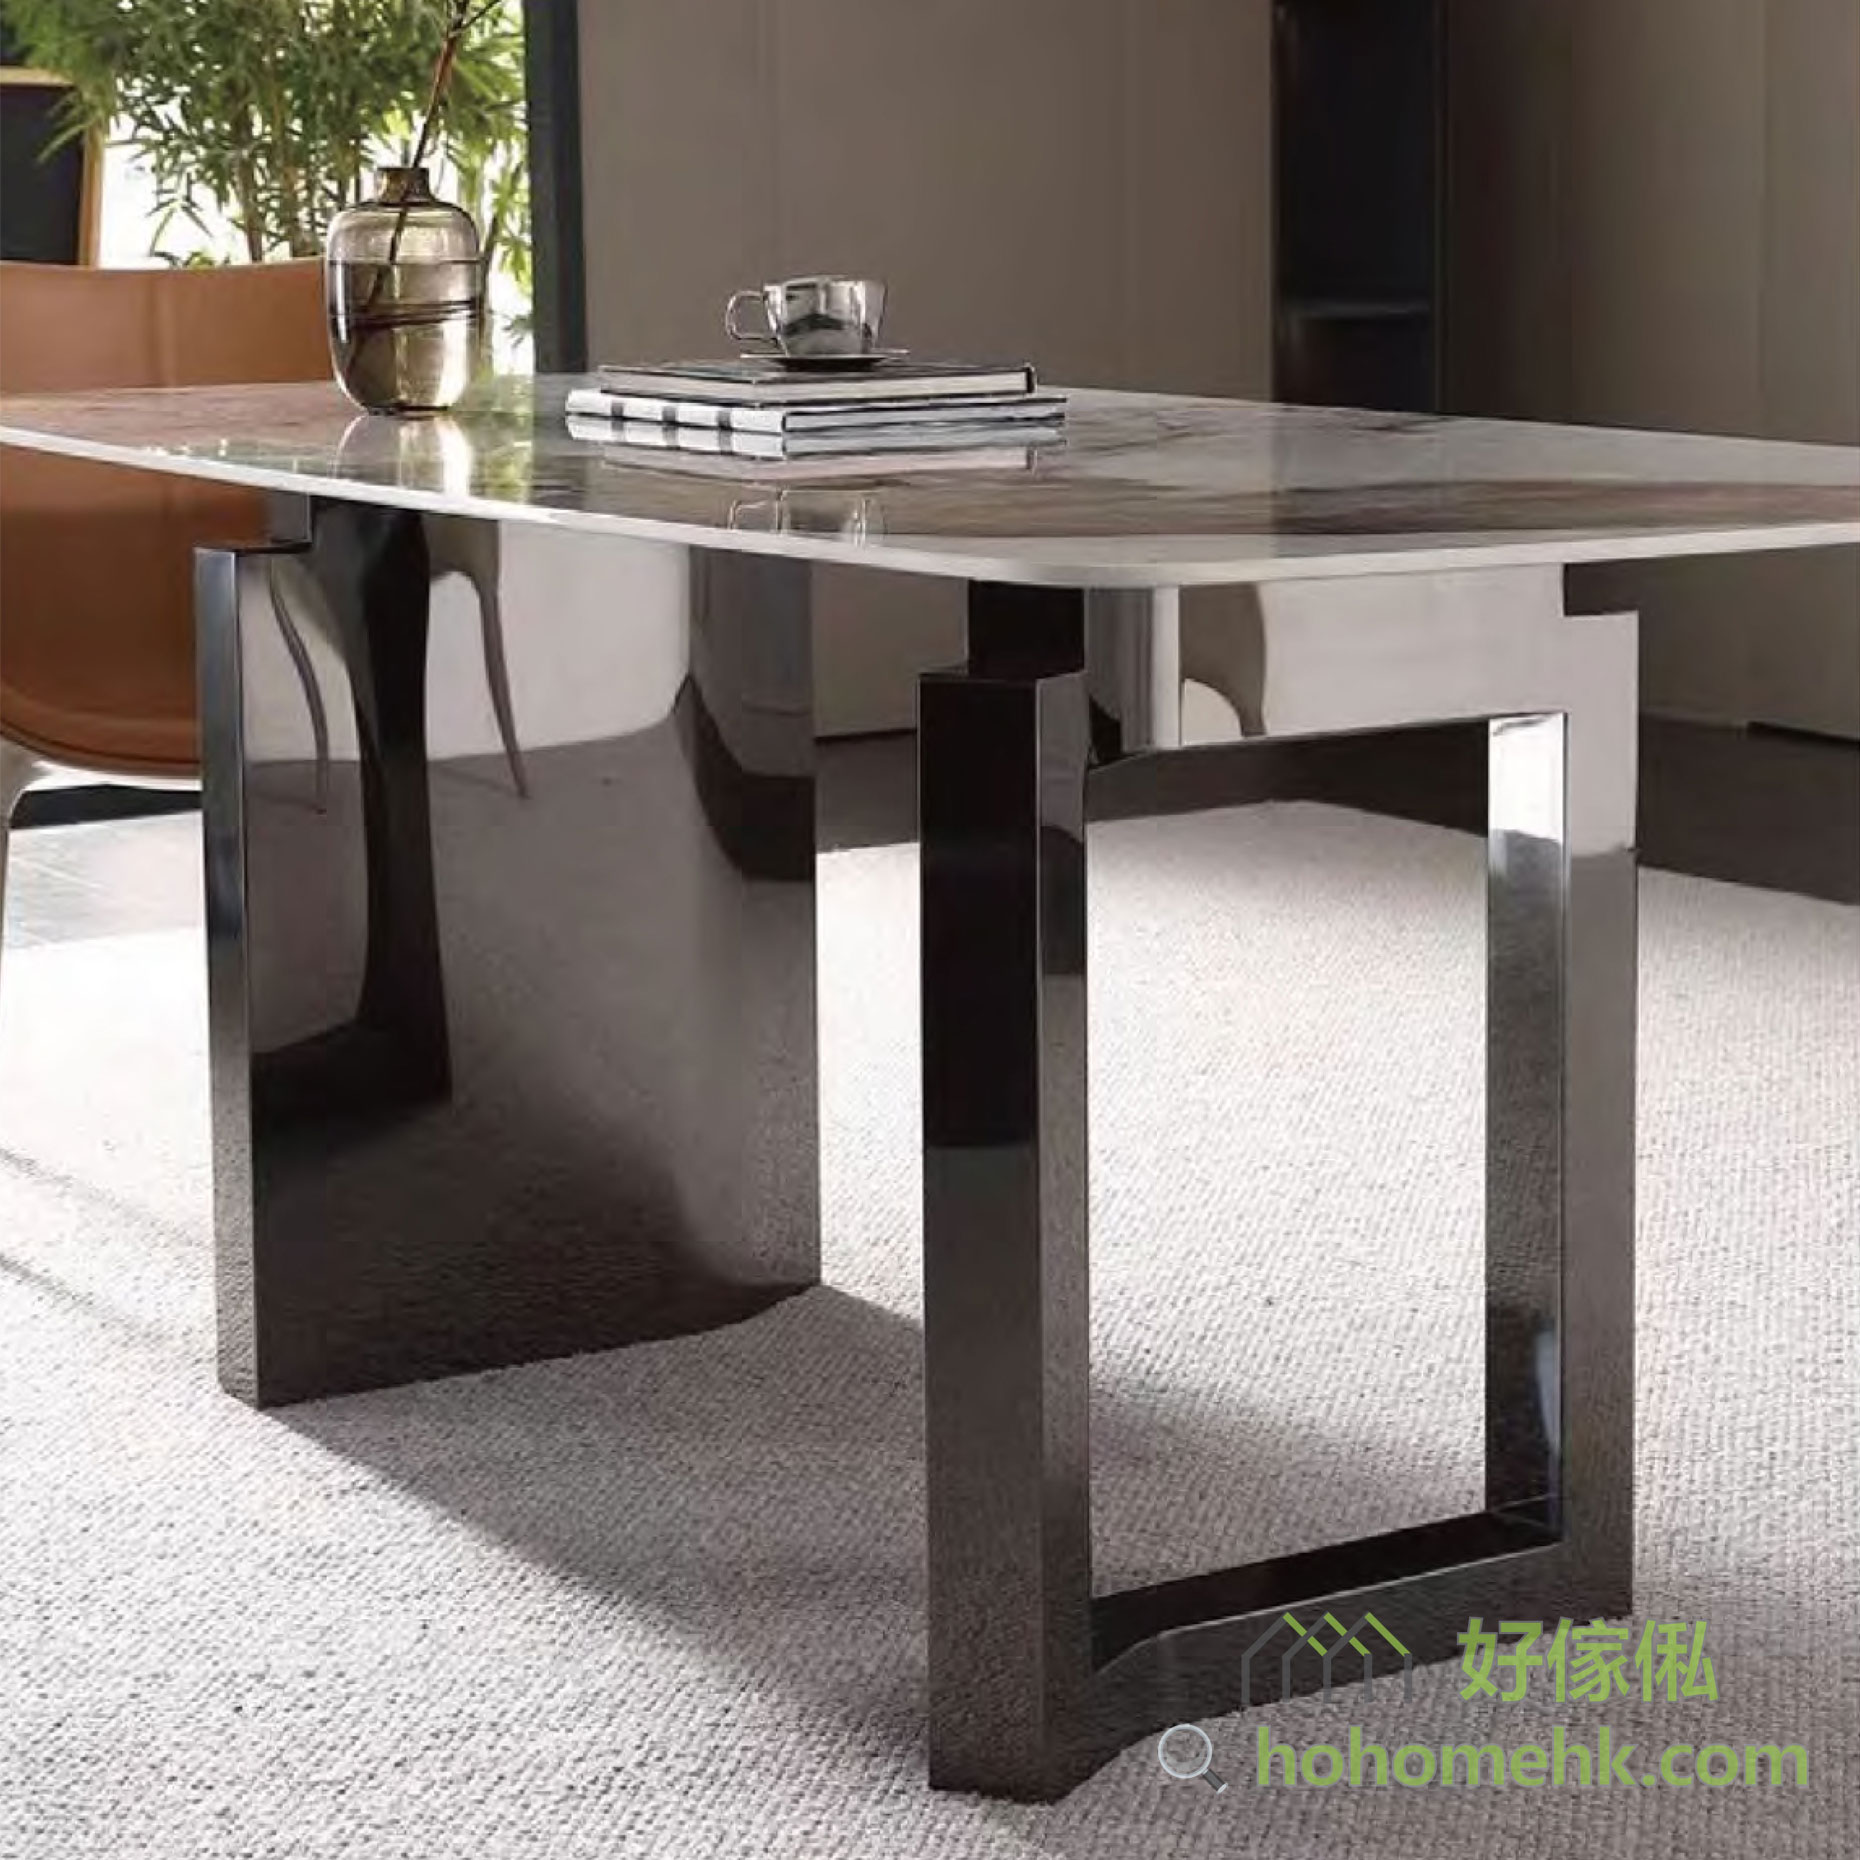 餐桌採用黑鋼材料做枱腳，實心與空心不對稱枱腳，營造出簡約而高雅的氛圍。將餐枱放在客廳中，展現出時尚大氣的風格。